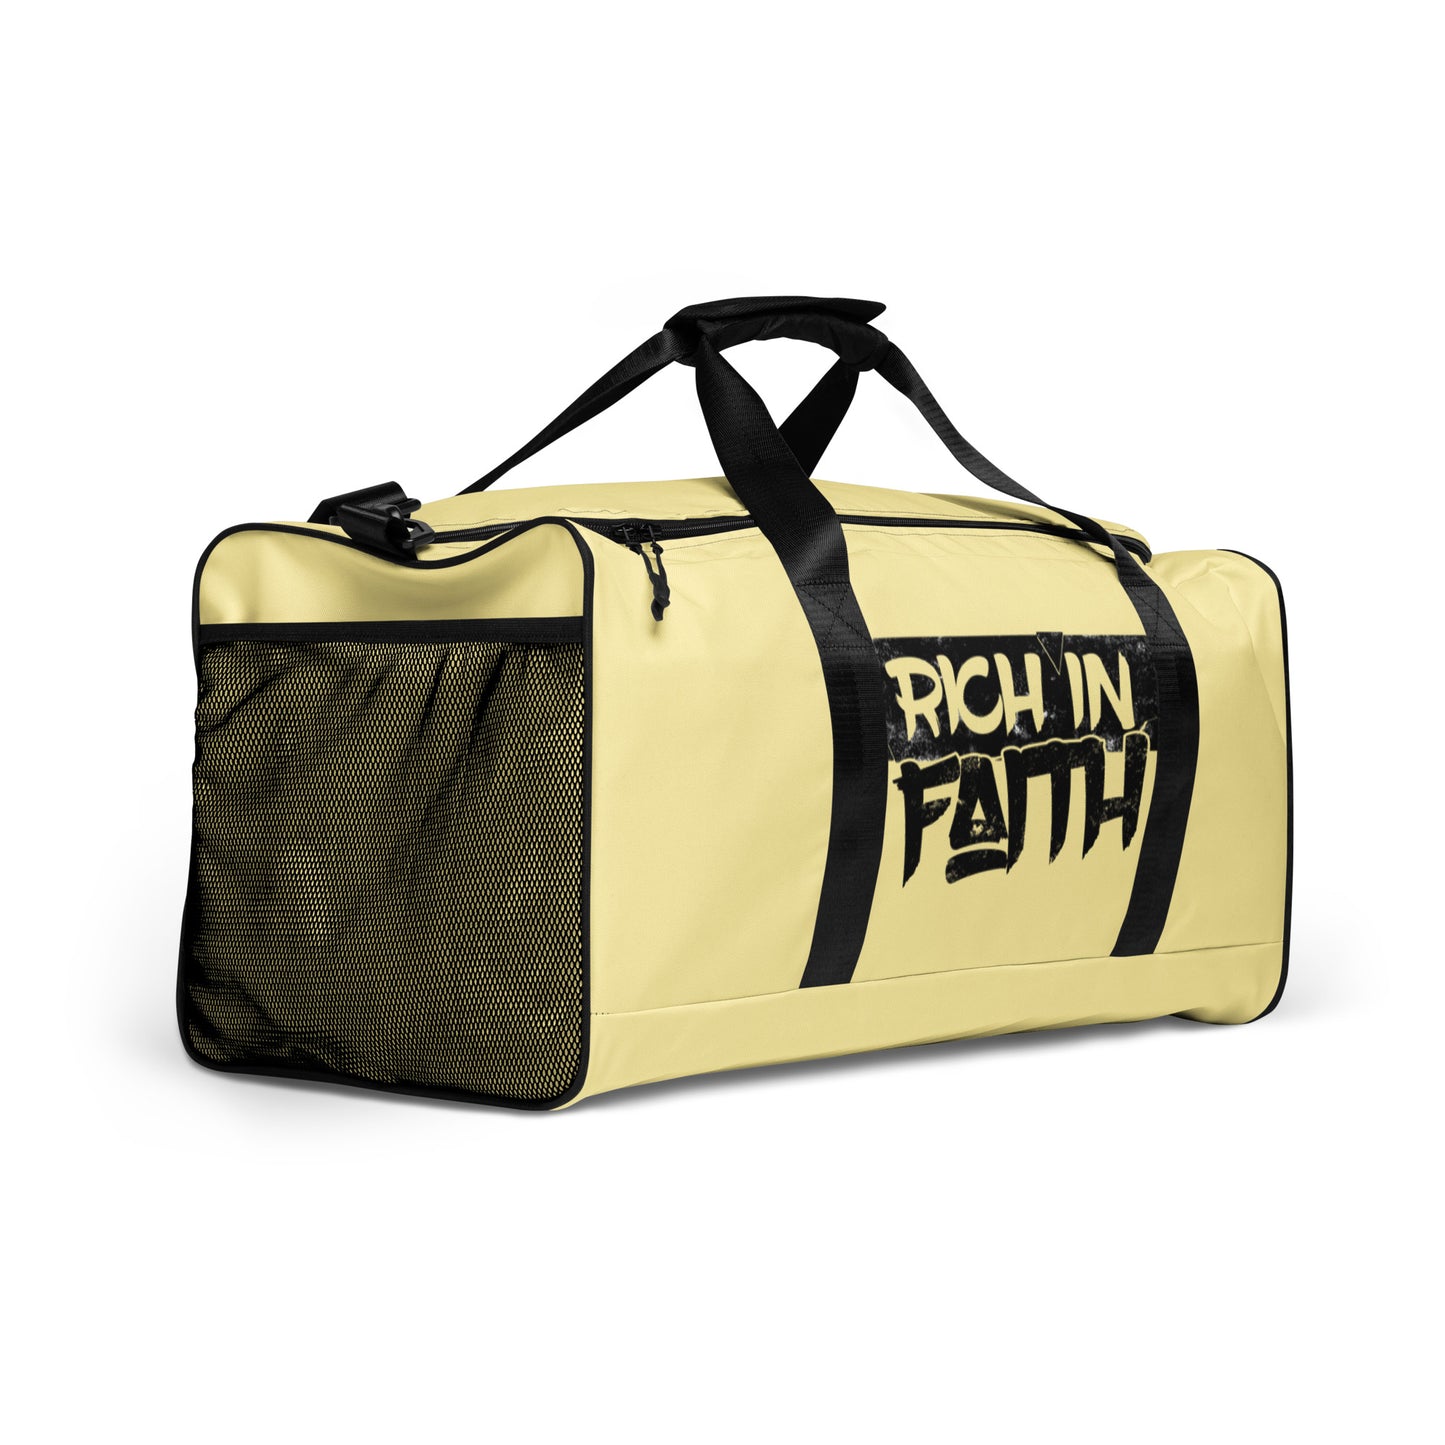 Rich in Faith Duffle bag - IGOTUS